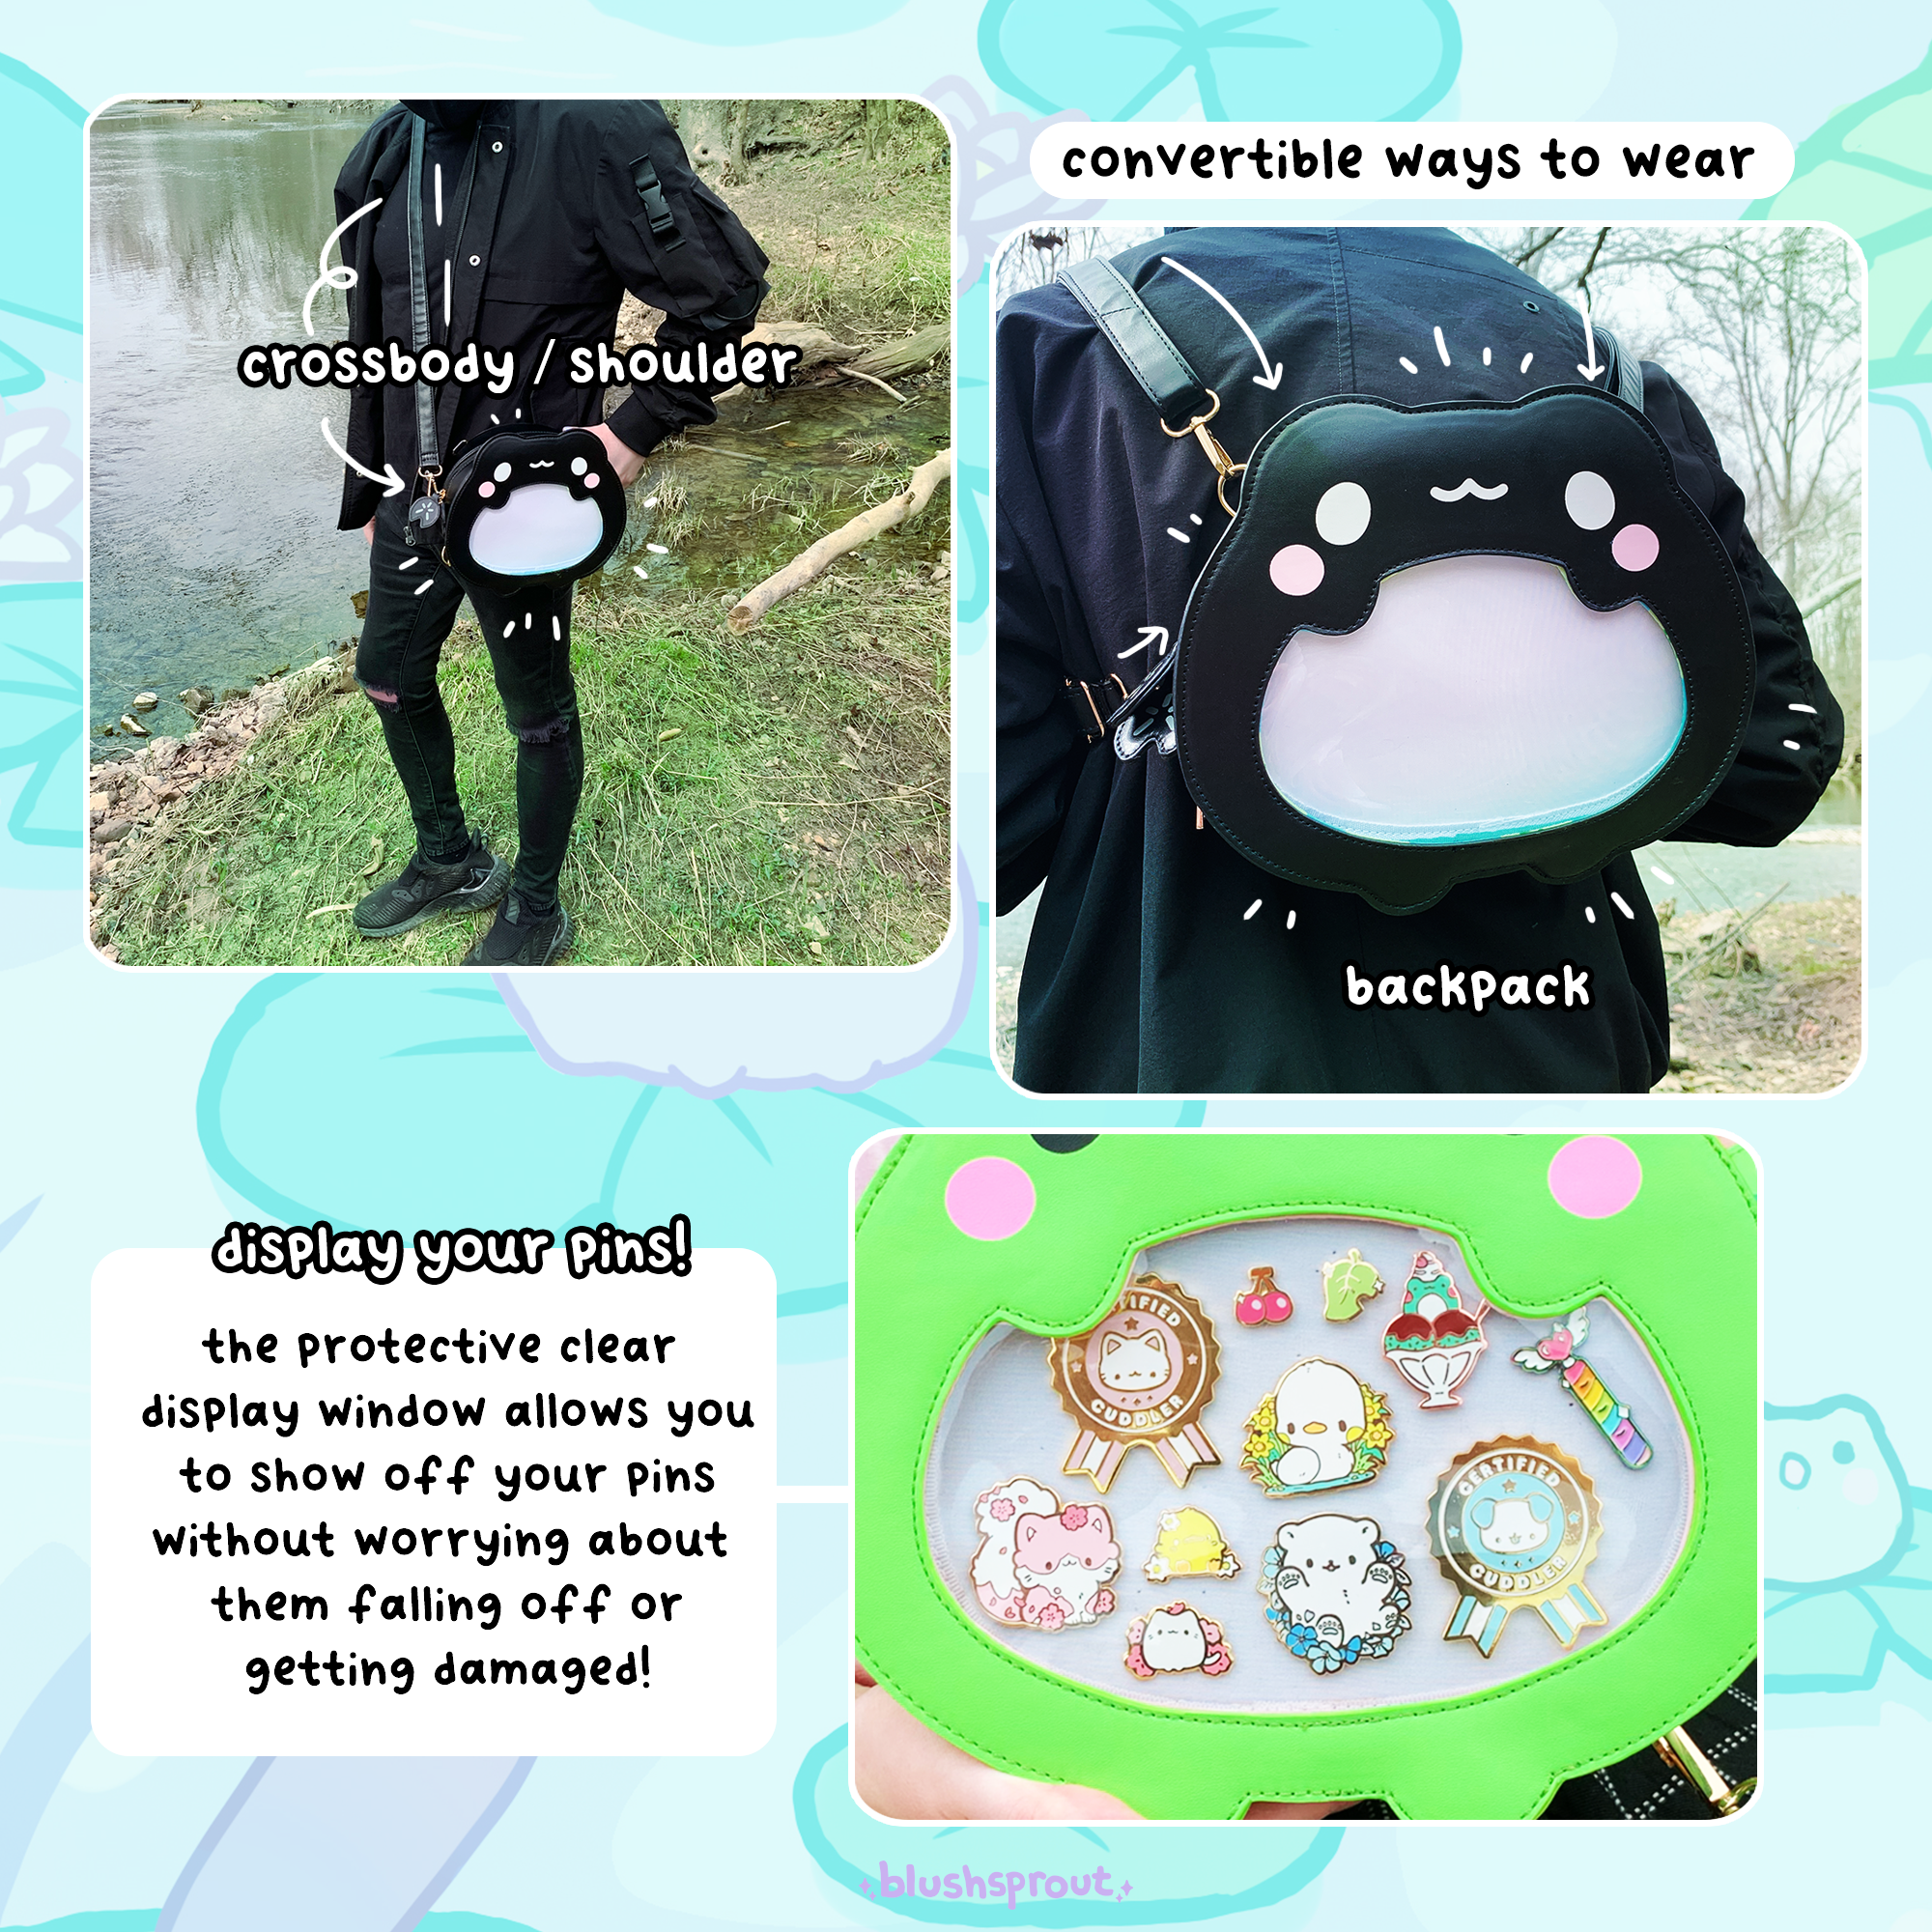 ☆ Froggie Ita Bag + Enamel Pins! ☆ by Blushsprout — Kickstarter